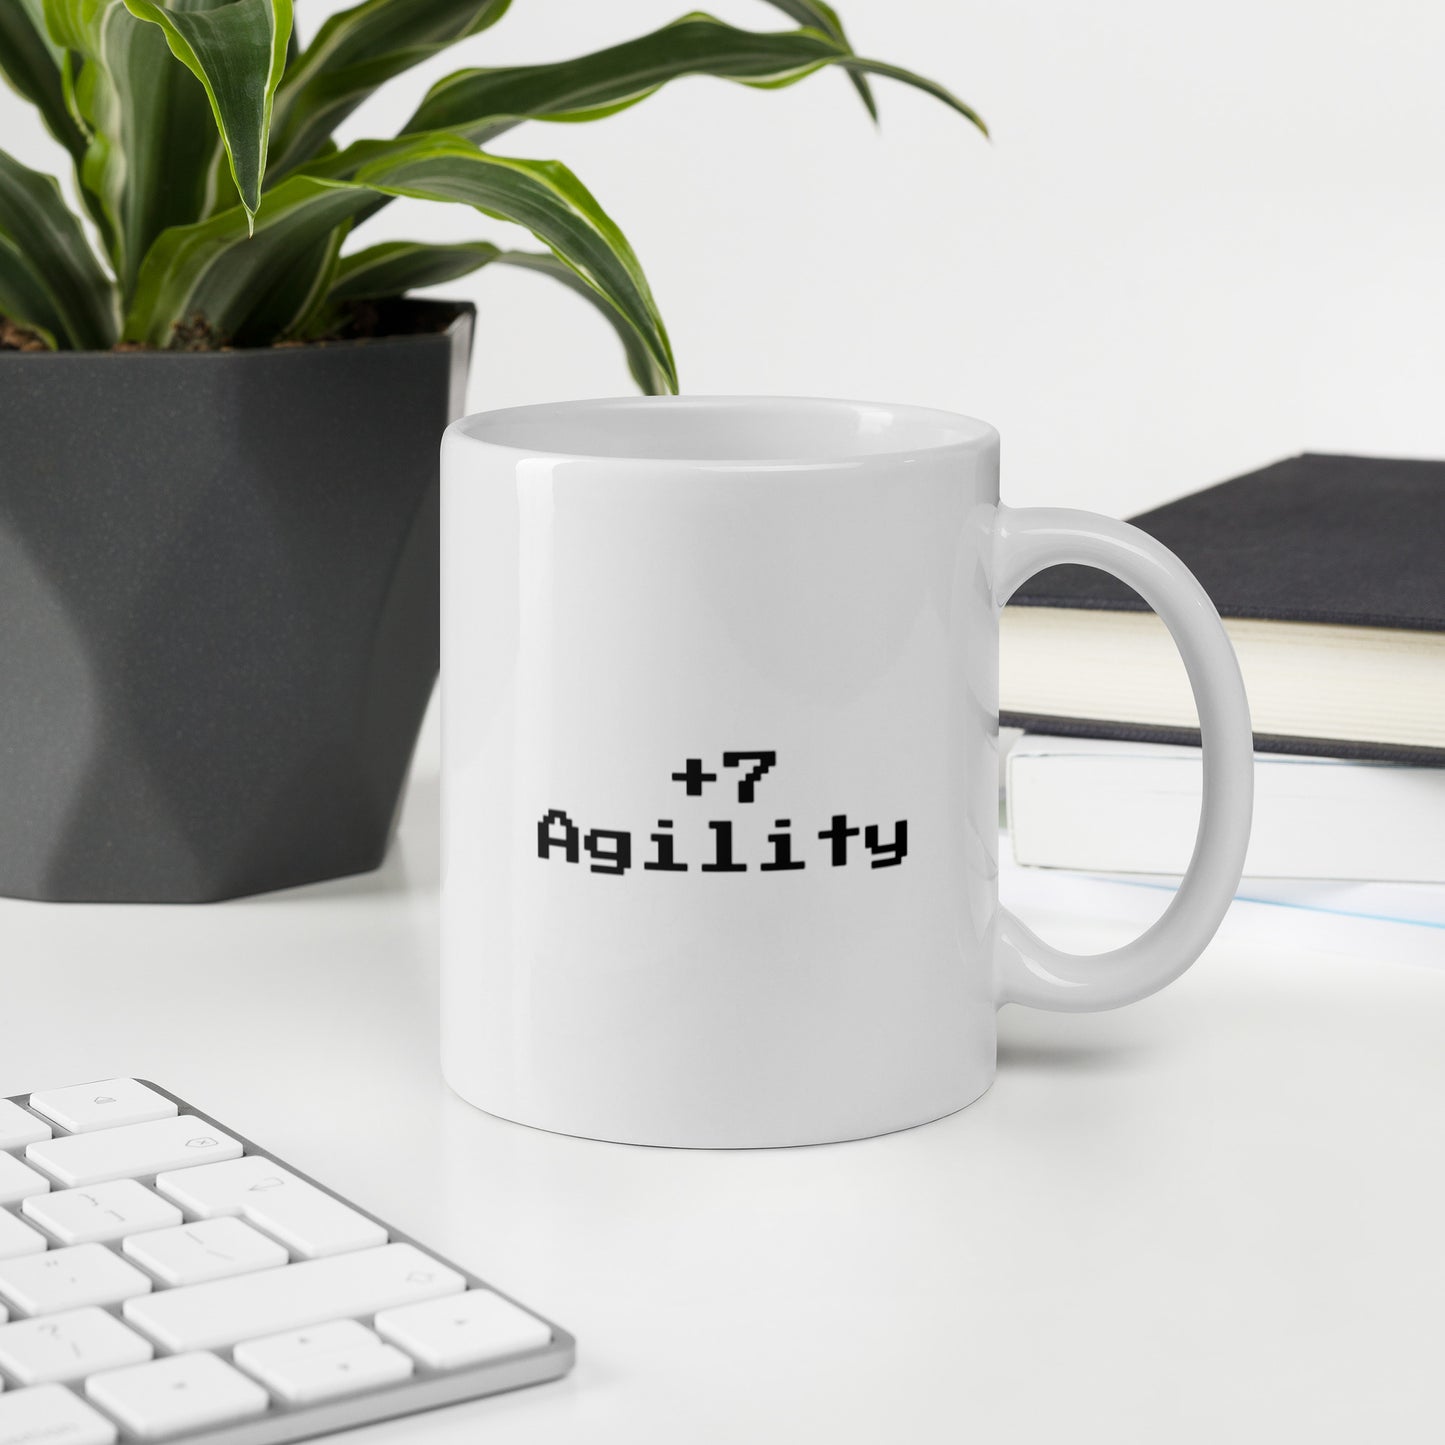 +7 agility - Mug